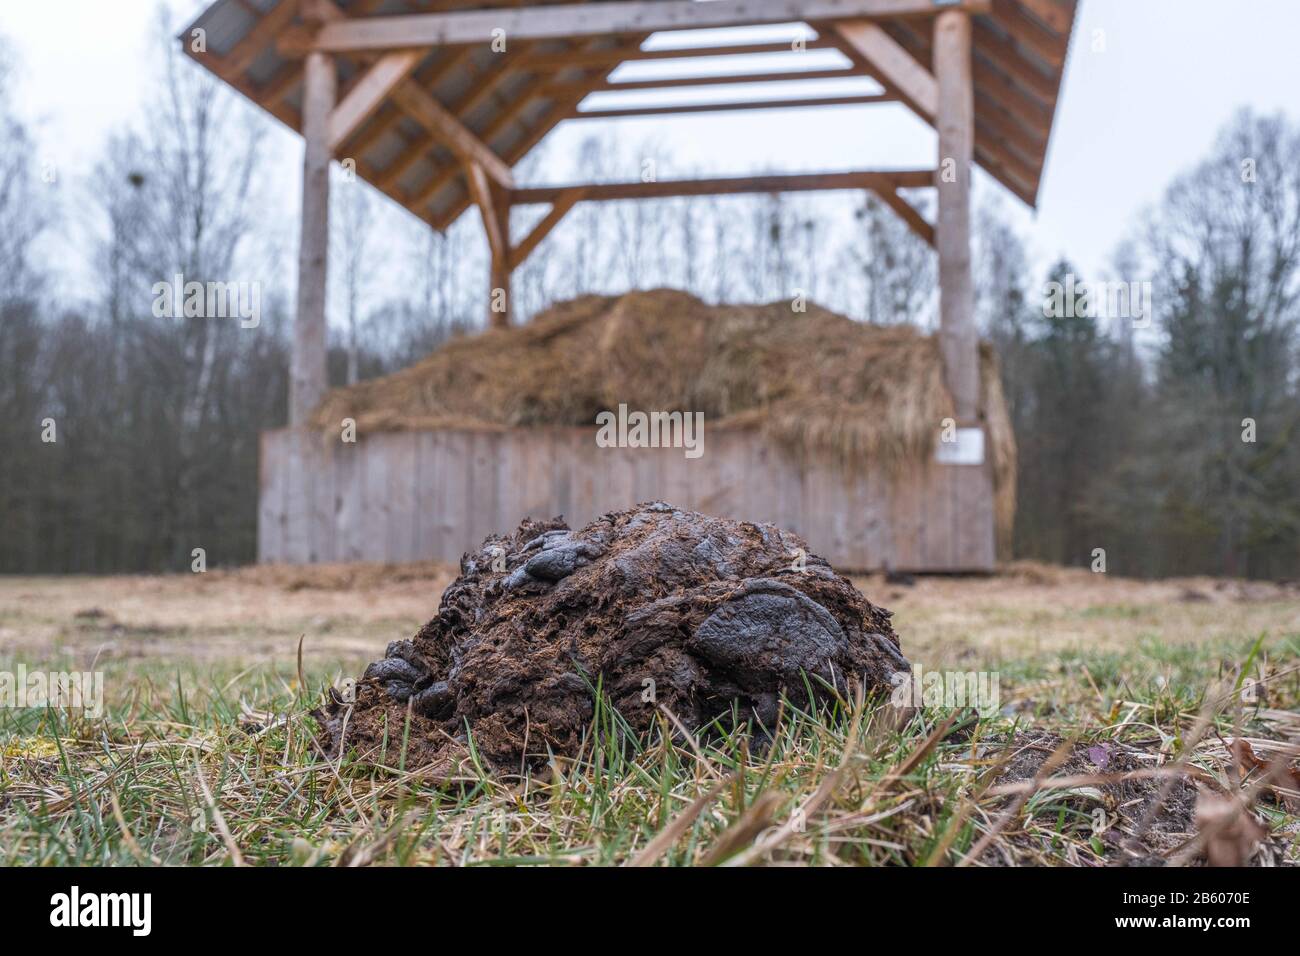 Bialowieza, Polonia. 8 de marzo de 2020. Excrementos de bisontes europeos en el prado forestal en el este de Polonia. La población mundial total de Bison europeos es de alrededor de 7000 habitantes y alrededor de 600 pertenecen a la población silvestre en el bosque de Bialowieza, el bosque primigenio más grande que queda en Europa. El bastidor de alimentación en el fondo es una parte del extenso programa de conservación que se ejecuta en el bosque. Crédito: Robert Passtryk/Zuma Wire/Alamy Live News Foto de stock